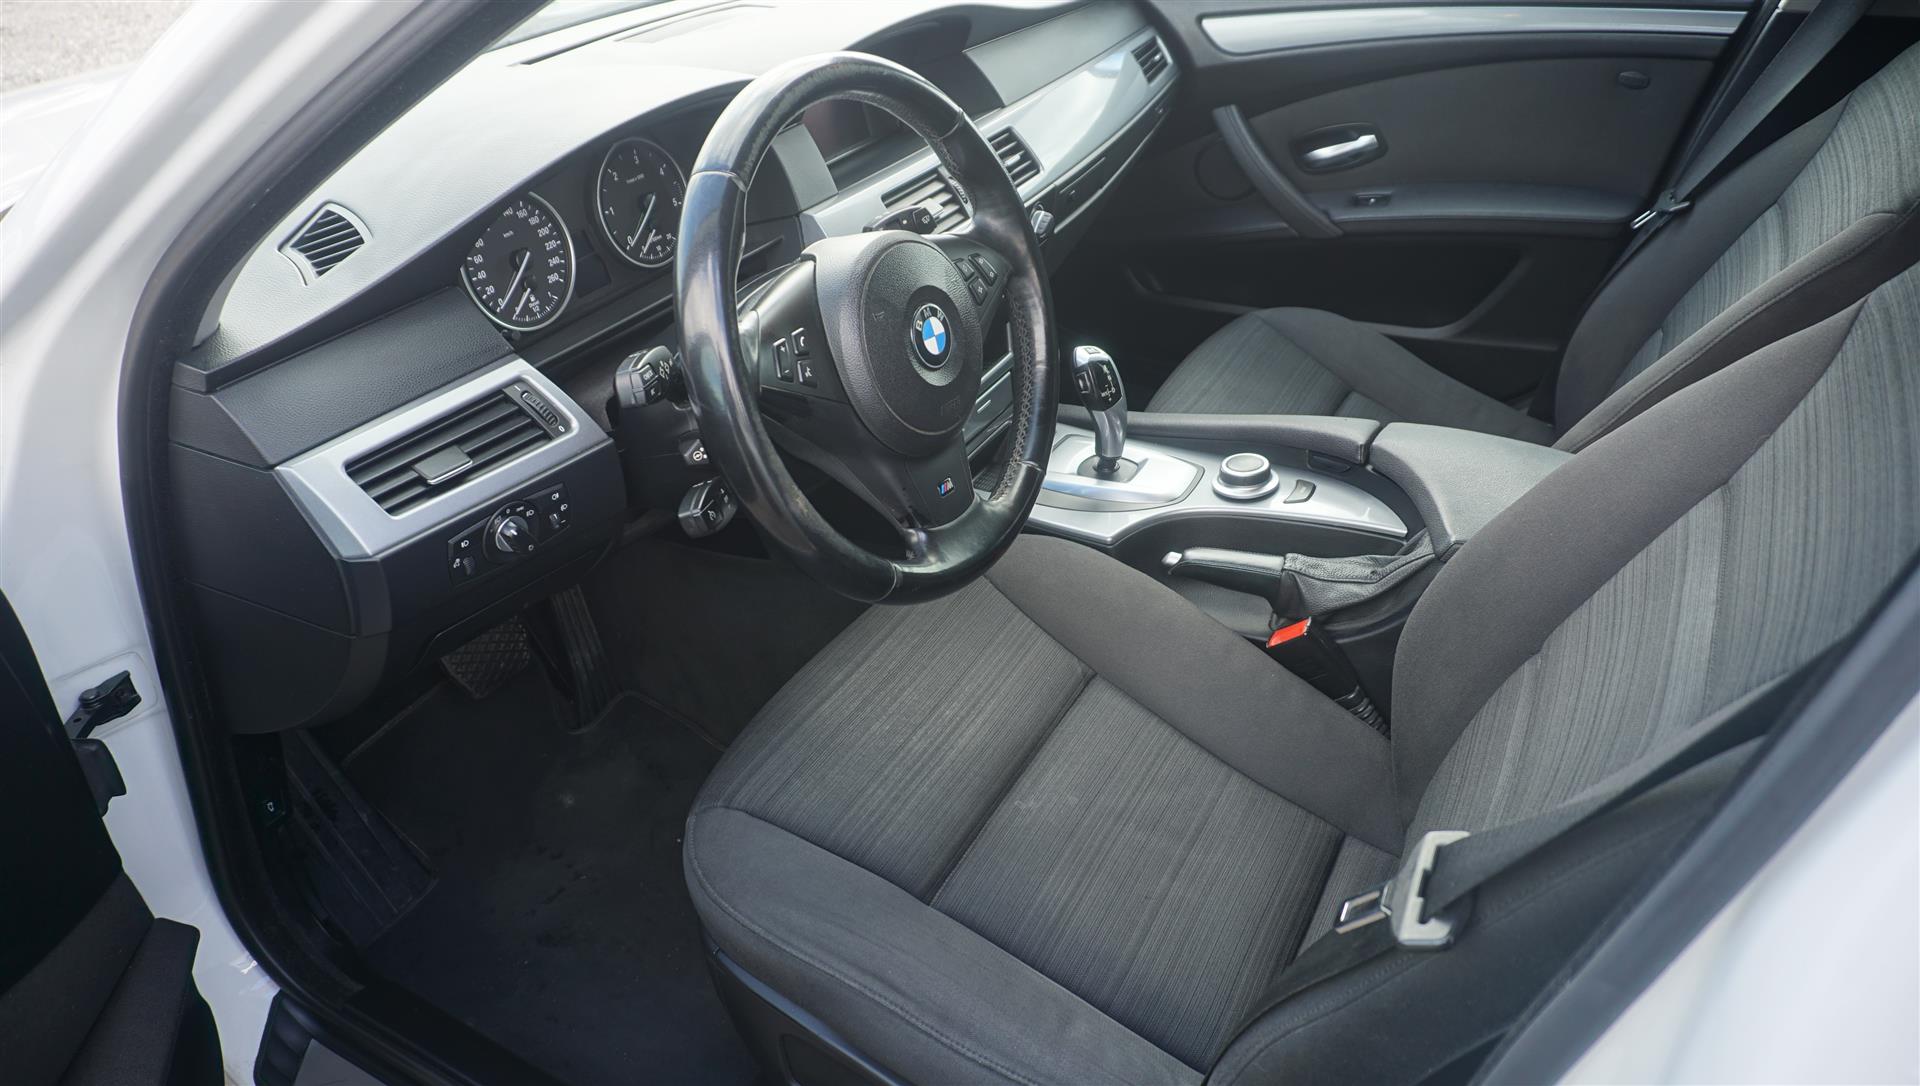 Billede af BMW 530d Touring 3,0 D 235HK Stc 6g Aut.